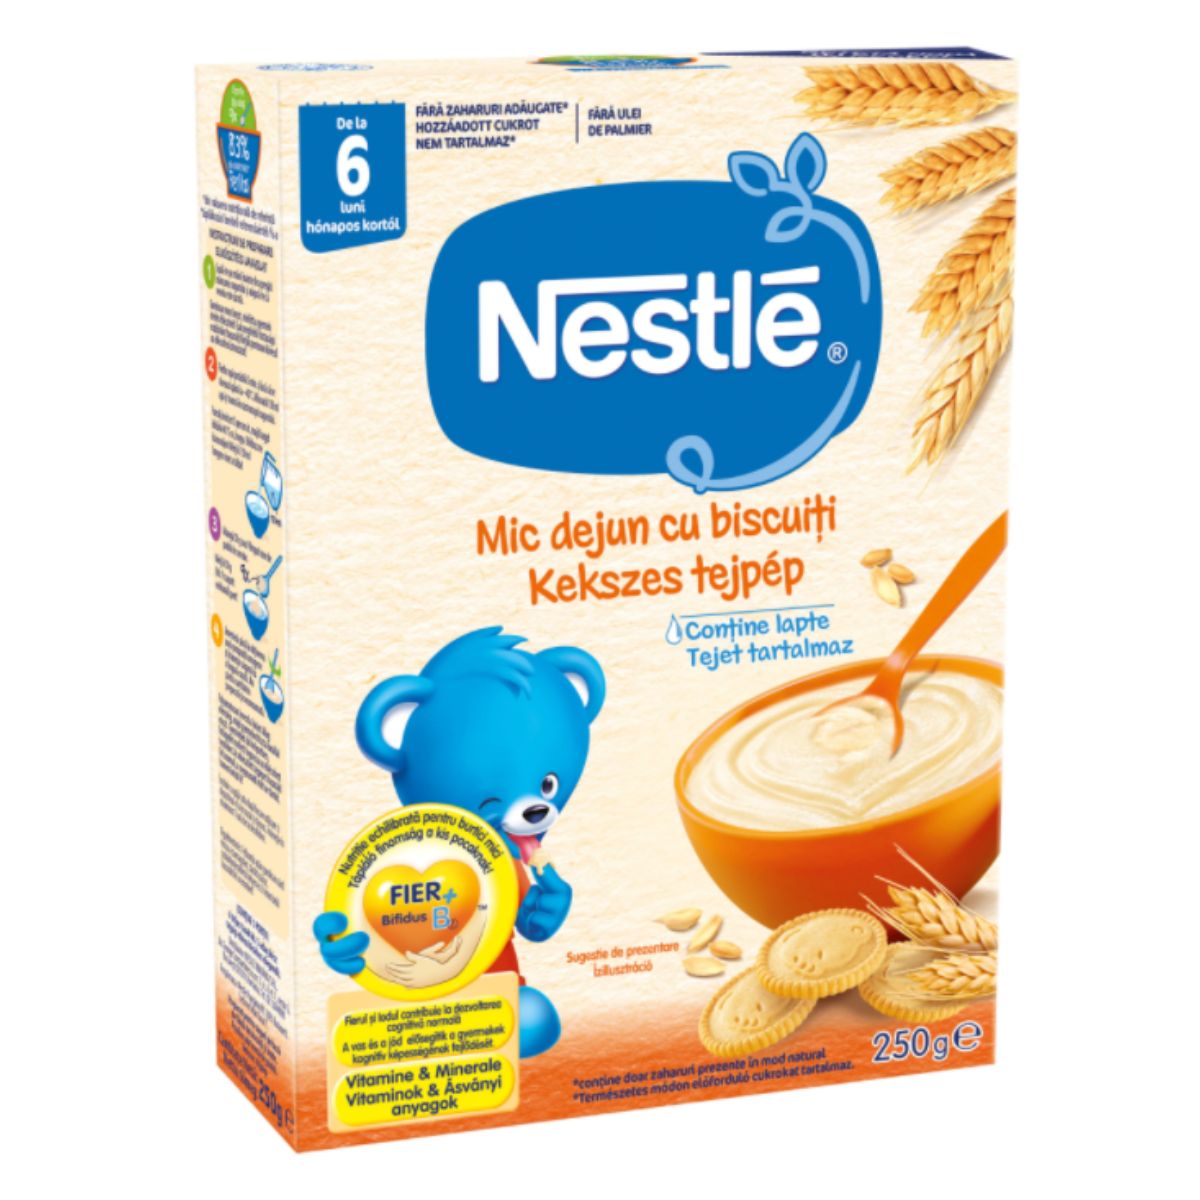 Cereale Nestle, Mic dejun cu biscuiti, 250 g Nestle